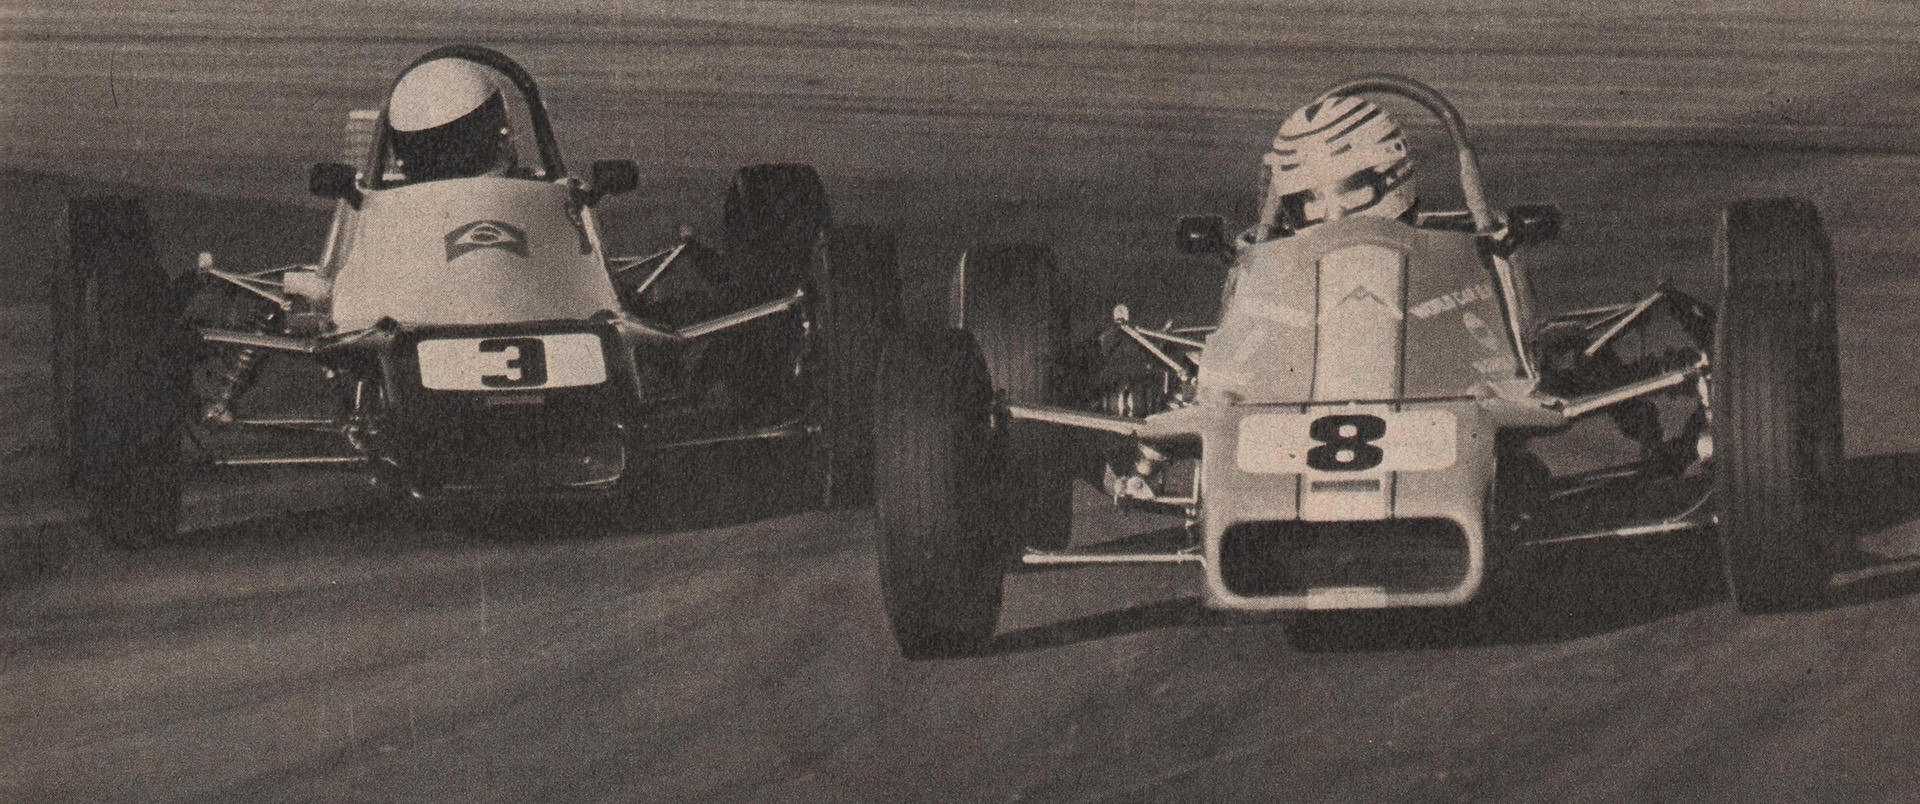 El duelo Senna vs. Mansilla fue el más fuerte de la Fórmula Ford Británica en 1981 (Archivo CORSA).